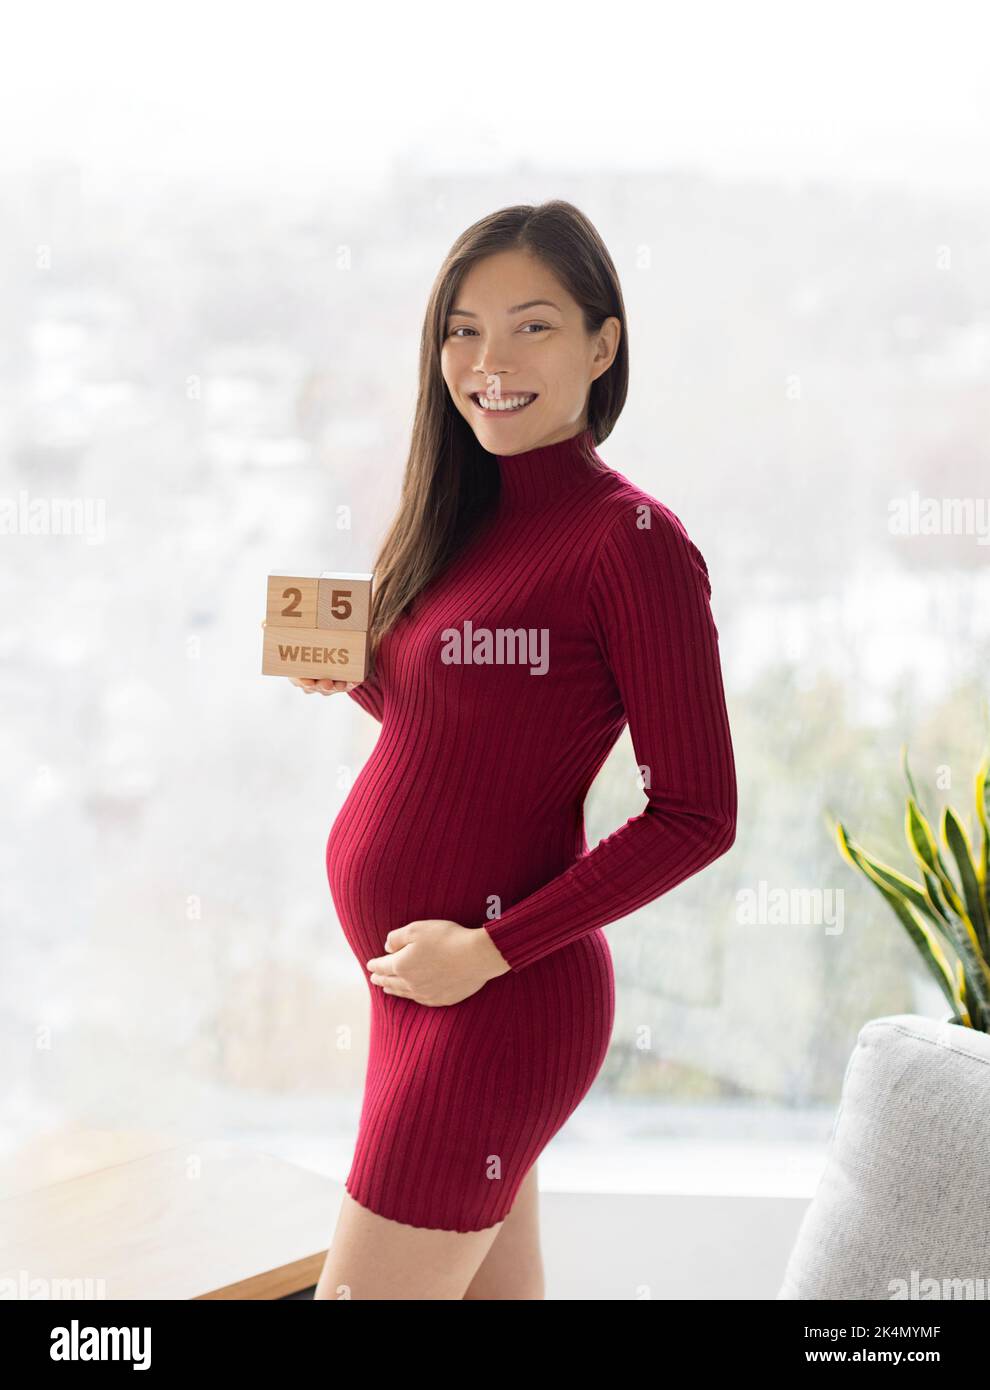 Femme enceinte asiatique montrant 25 semaines de grossesse bosse pour maternité photoshoot tenant des blocs de bois signe heureux. Recadrage vertical Banque D'Images